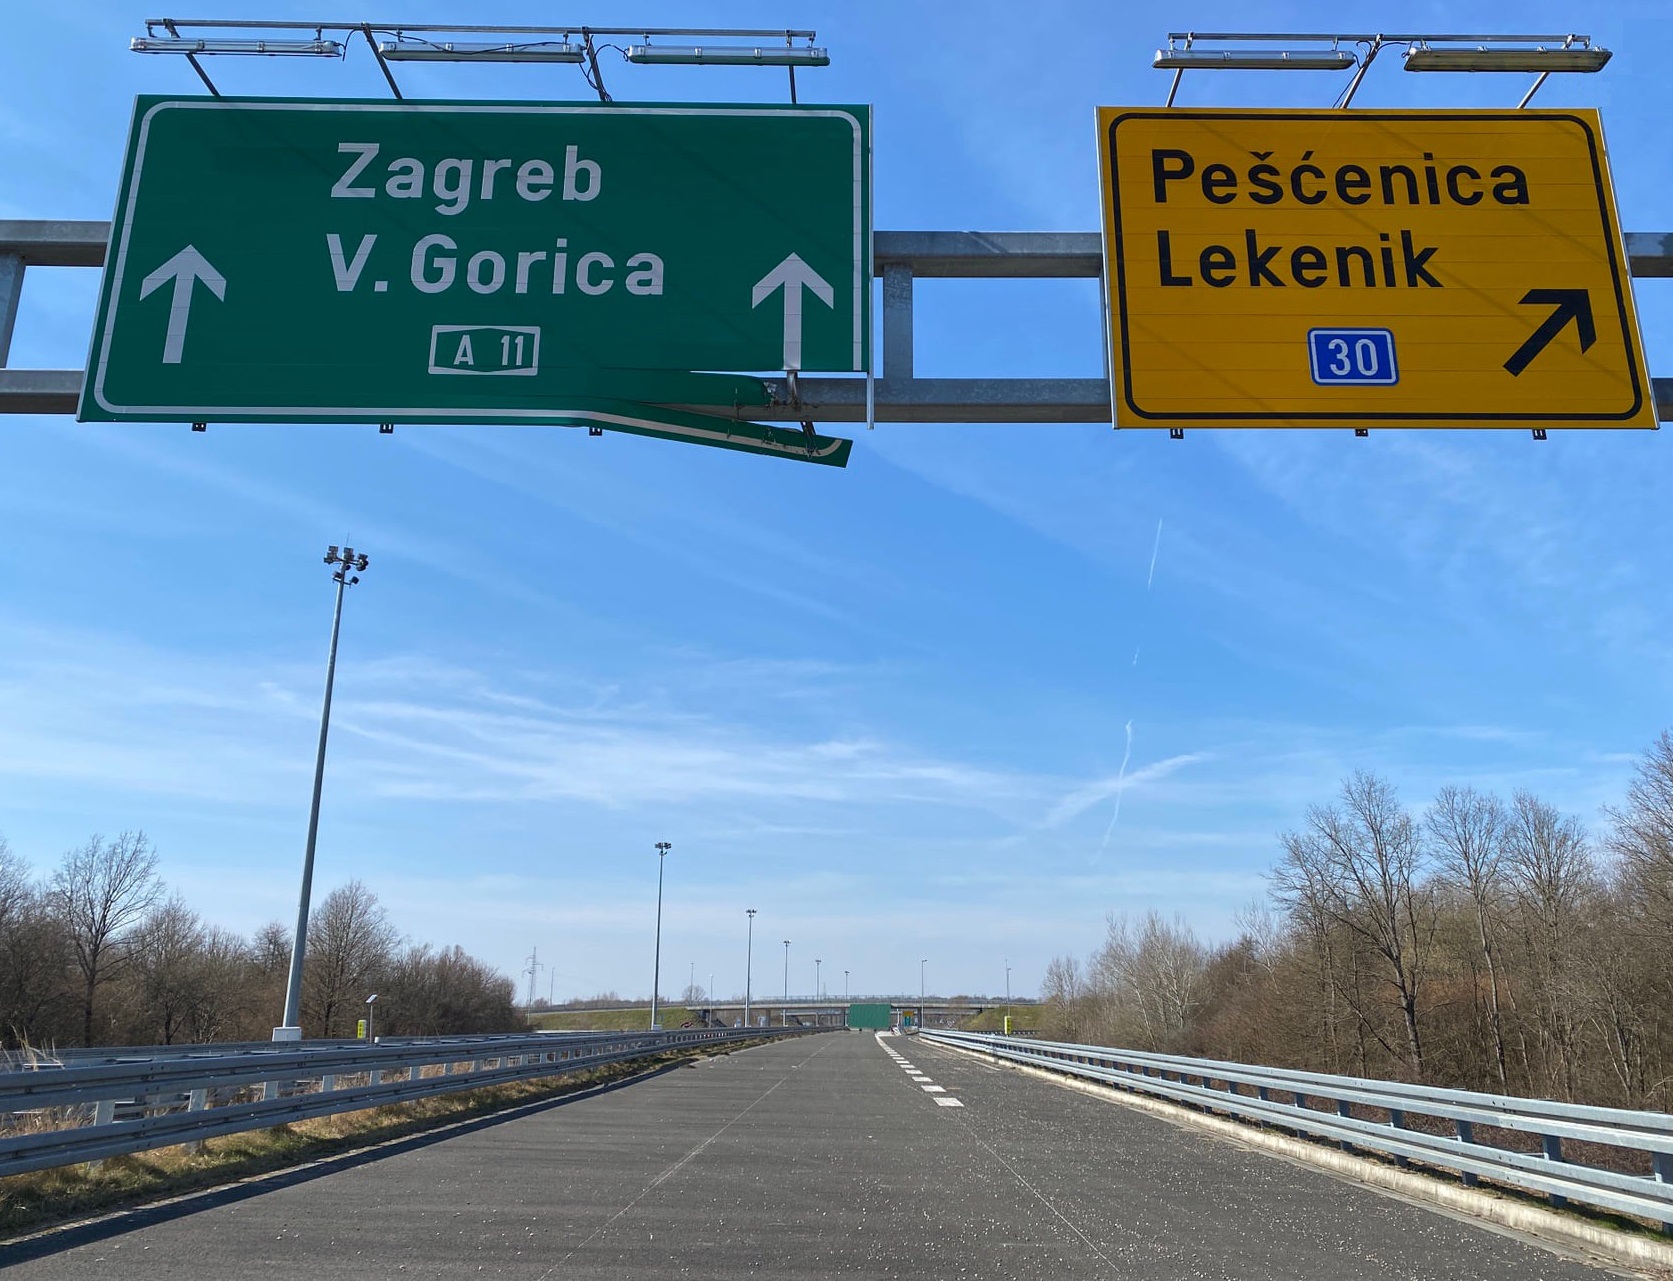 Dovršetak autoceste Zagreb – Sisak konačno je pred nama. Uz podršku Vlade Republike Hrvatske počela je realizacija projekta od strateškog značaja za Hrvatsku, Sisačko-moslavačku županiju i sve njene stanovnike.